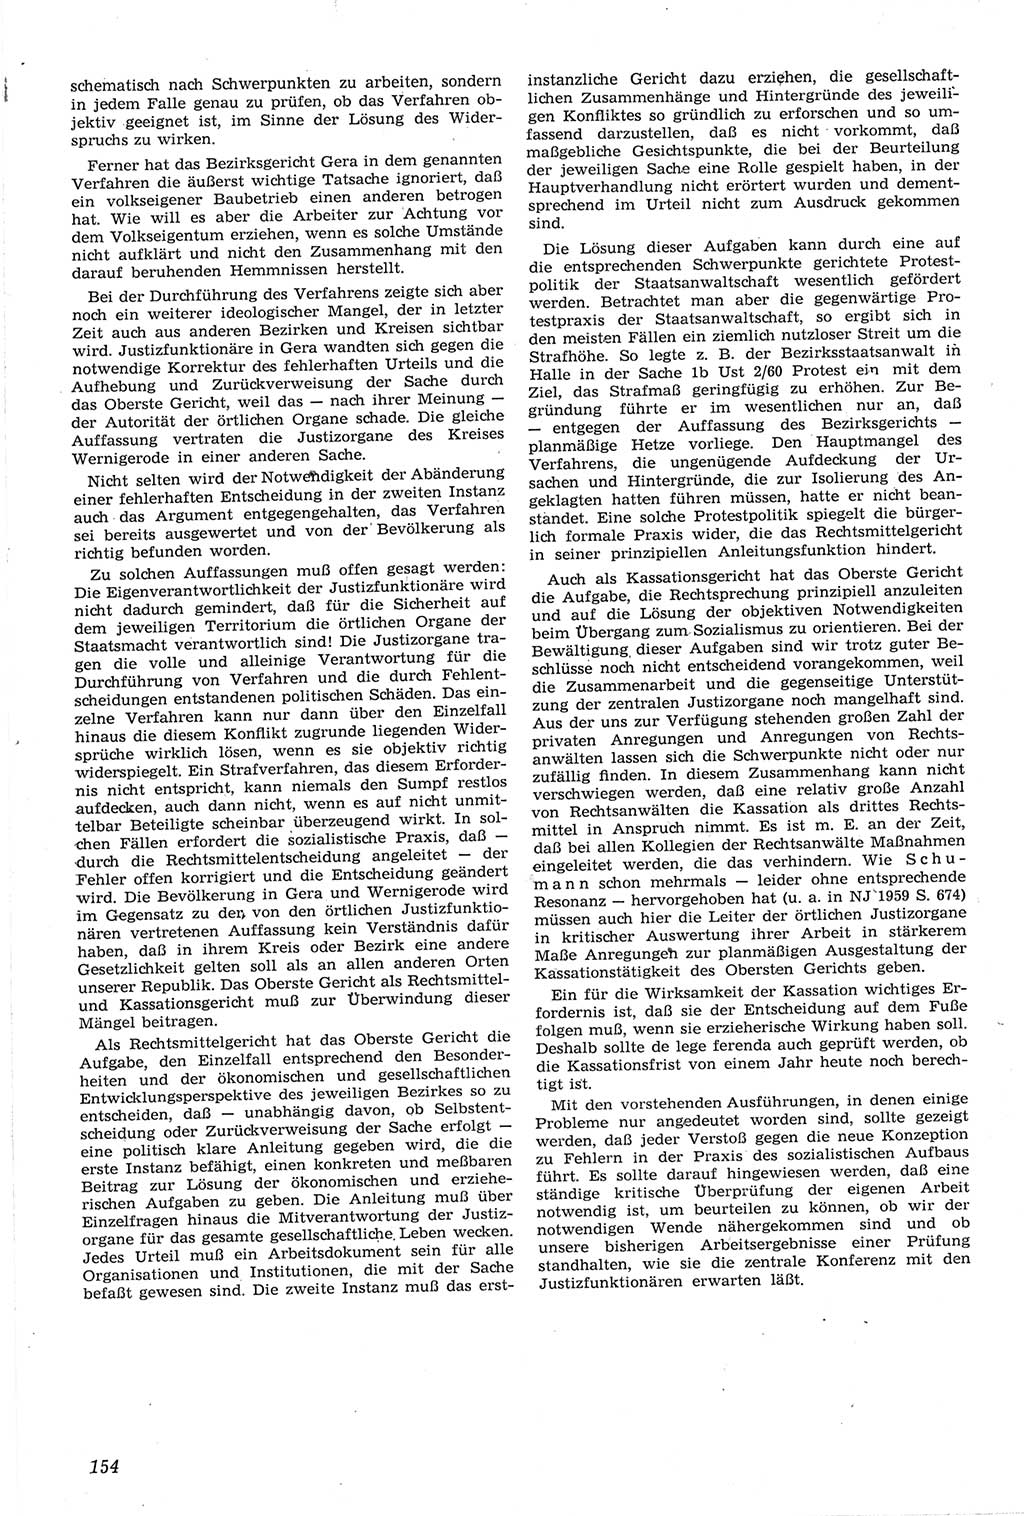 Neue Justiz (NJ), Zeitschrift für Recht und Rechtswissenschaft [Deutsche Demokratische Republik (DDR)], 14. Jahrgang 1960, Seite 154 (NJ DDR 1960, S. 154)